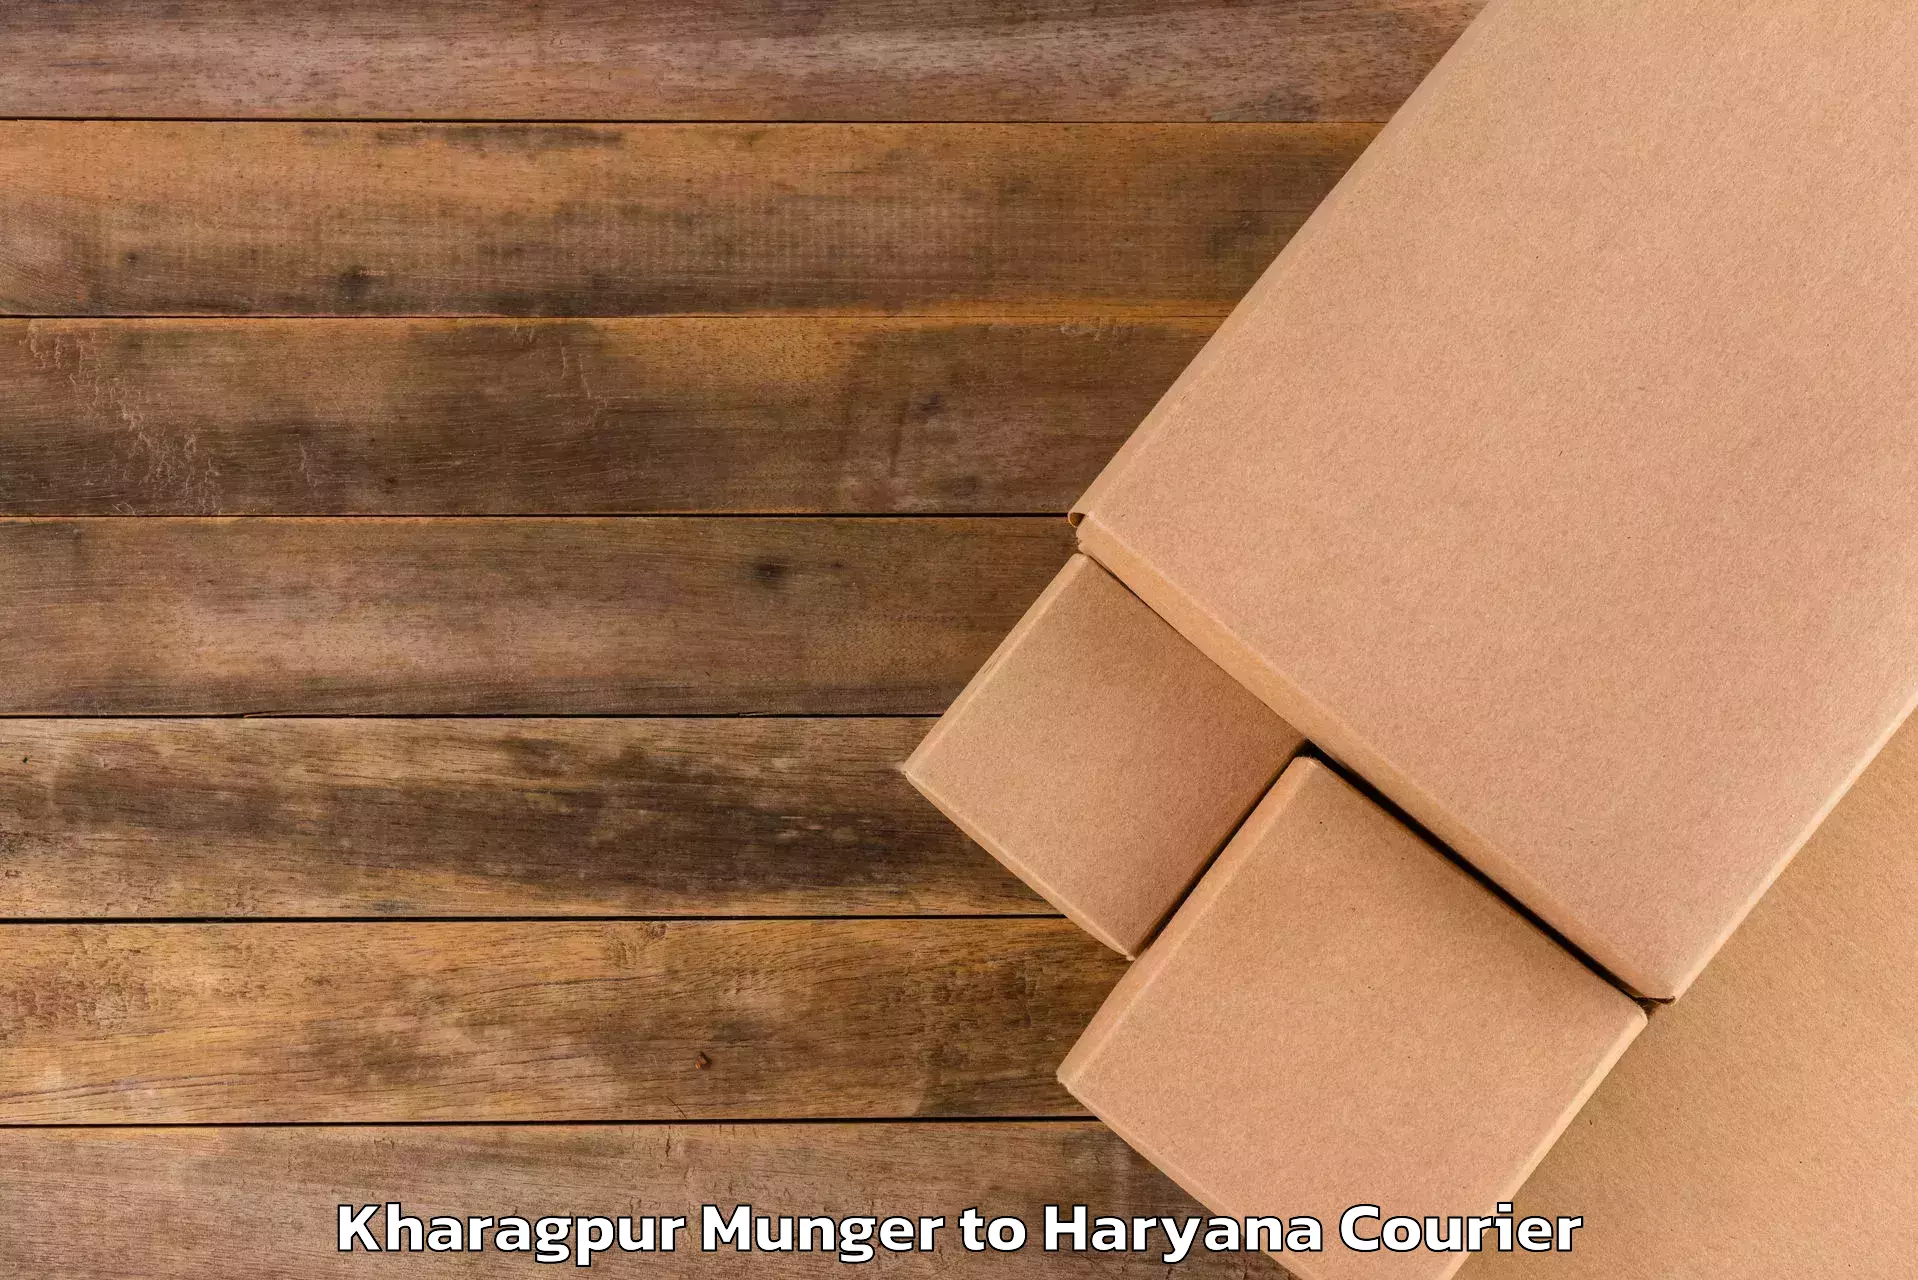 Luggage transport guidelines Kharagpur Munger to Dharuhera